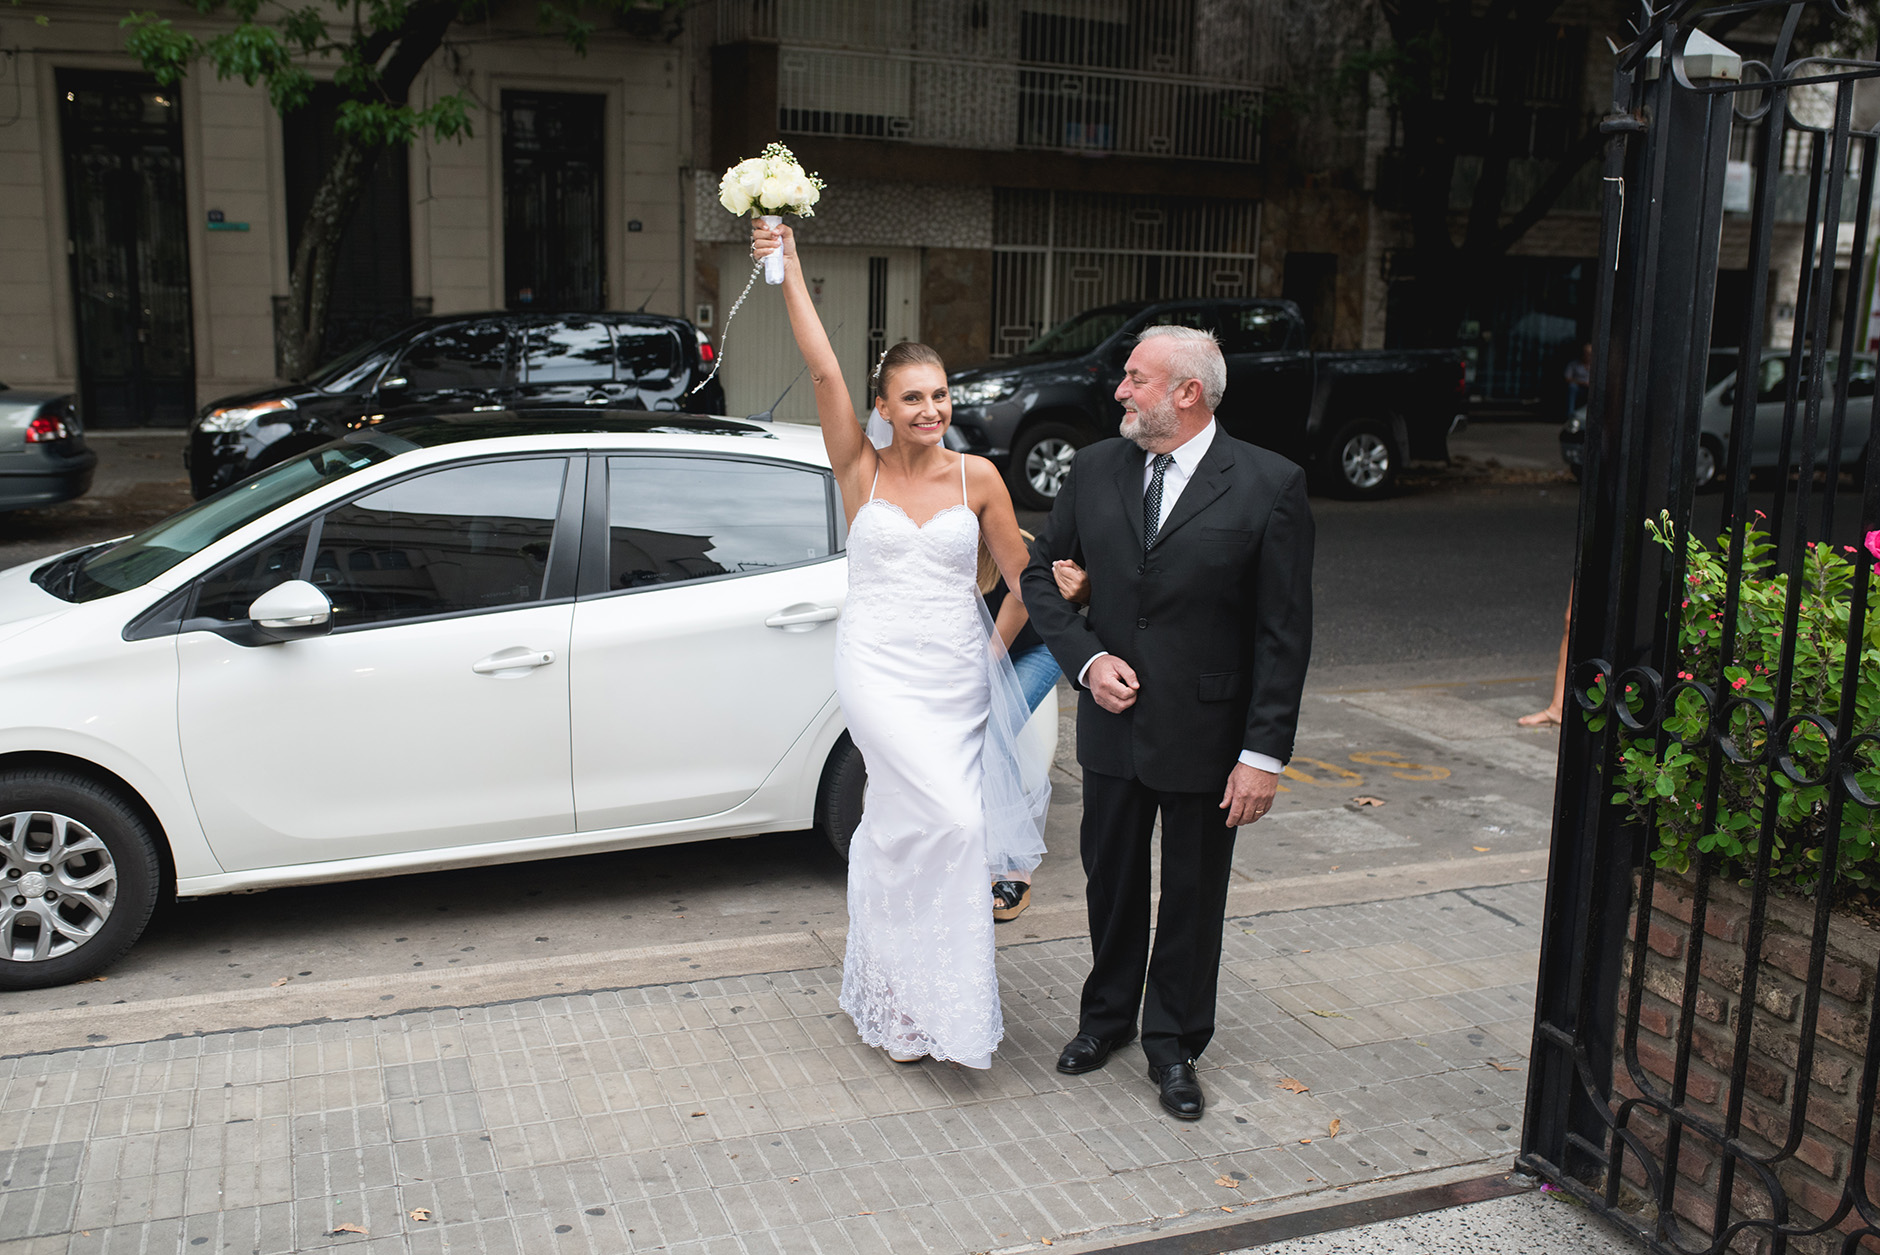 Fotos de la boda de Luisi y Maxi en Rosario realizadas por Bucle Fotografias Flor Bosio y Caro Clerici